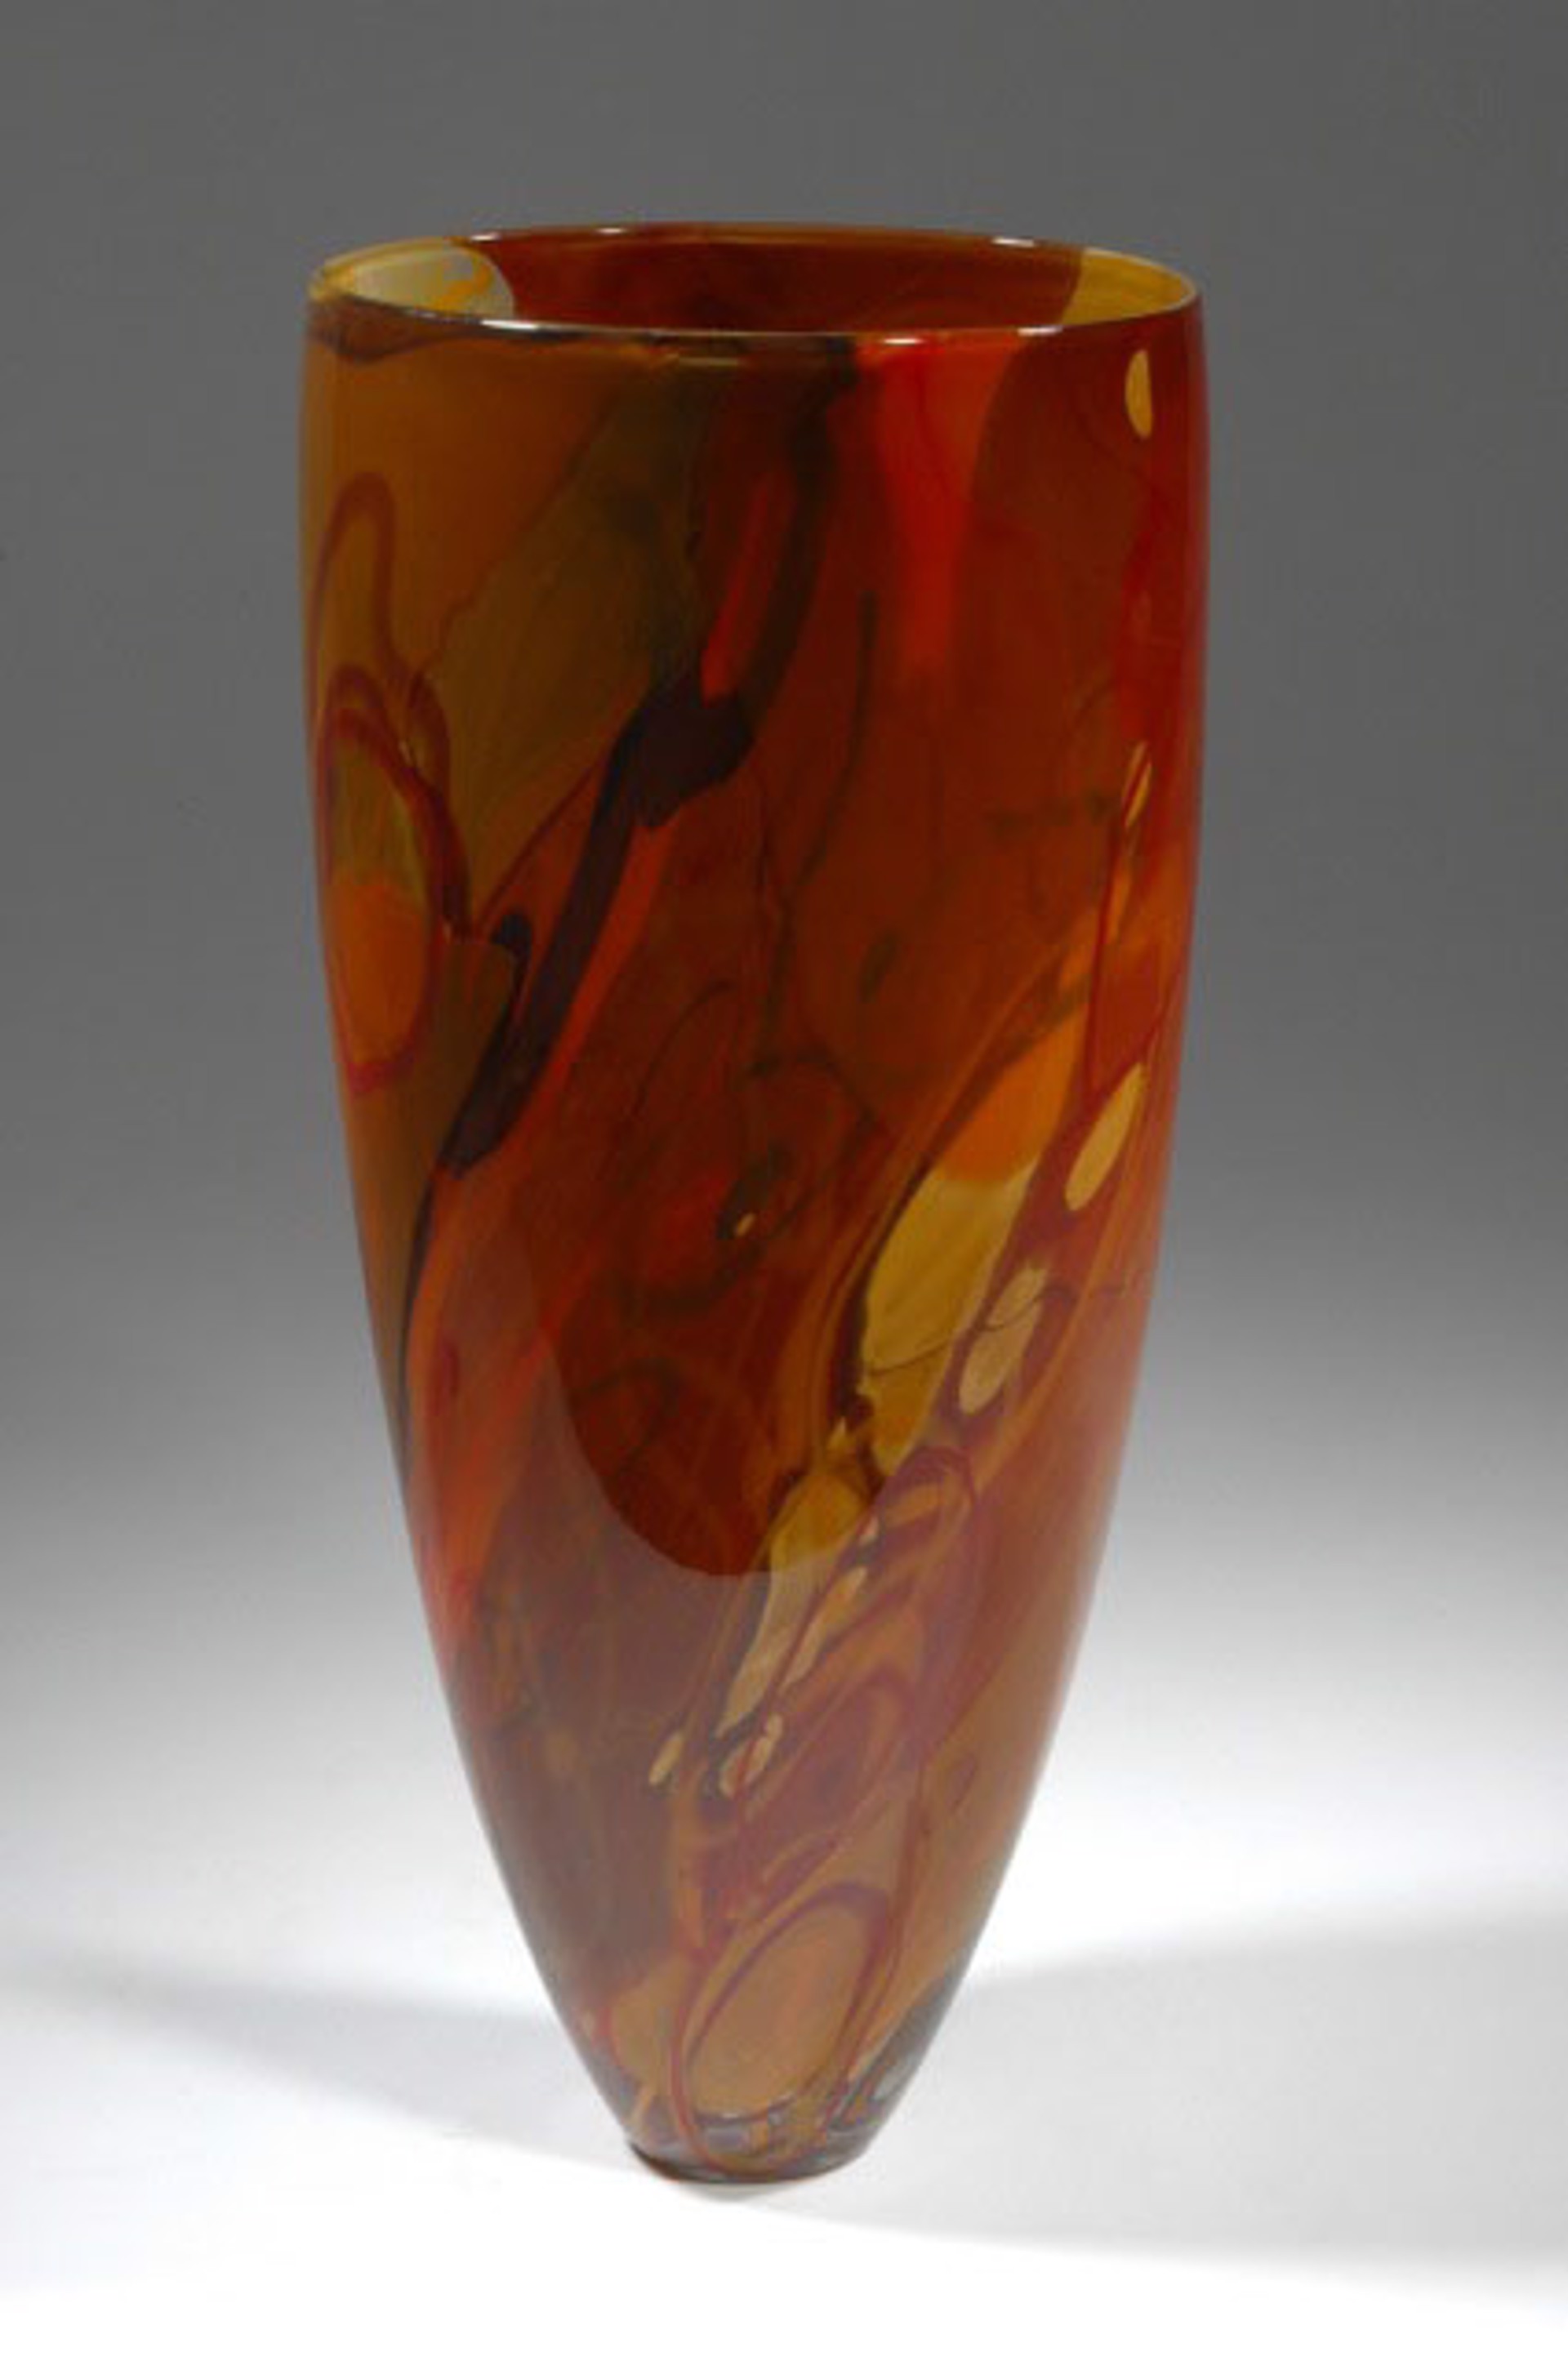 Shard Vase - Open Form Red Orange Rust by Susan Rankin